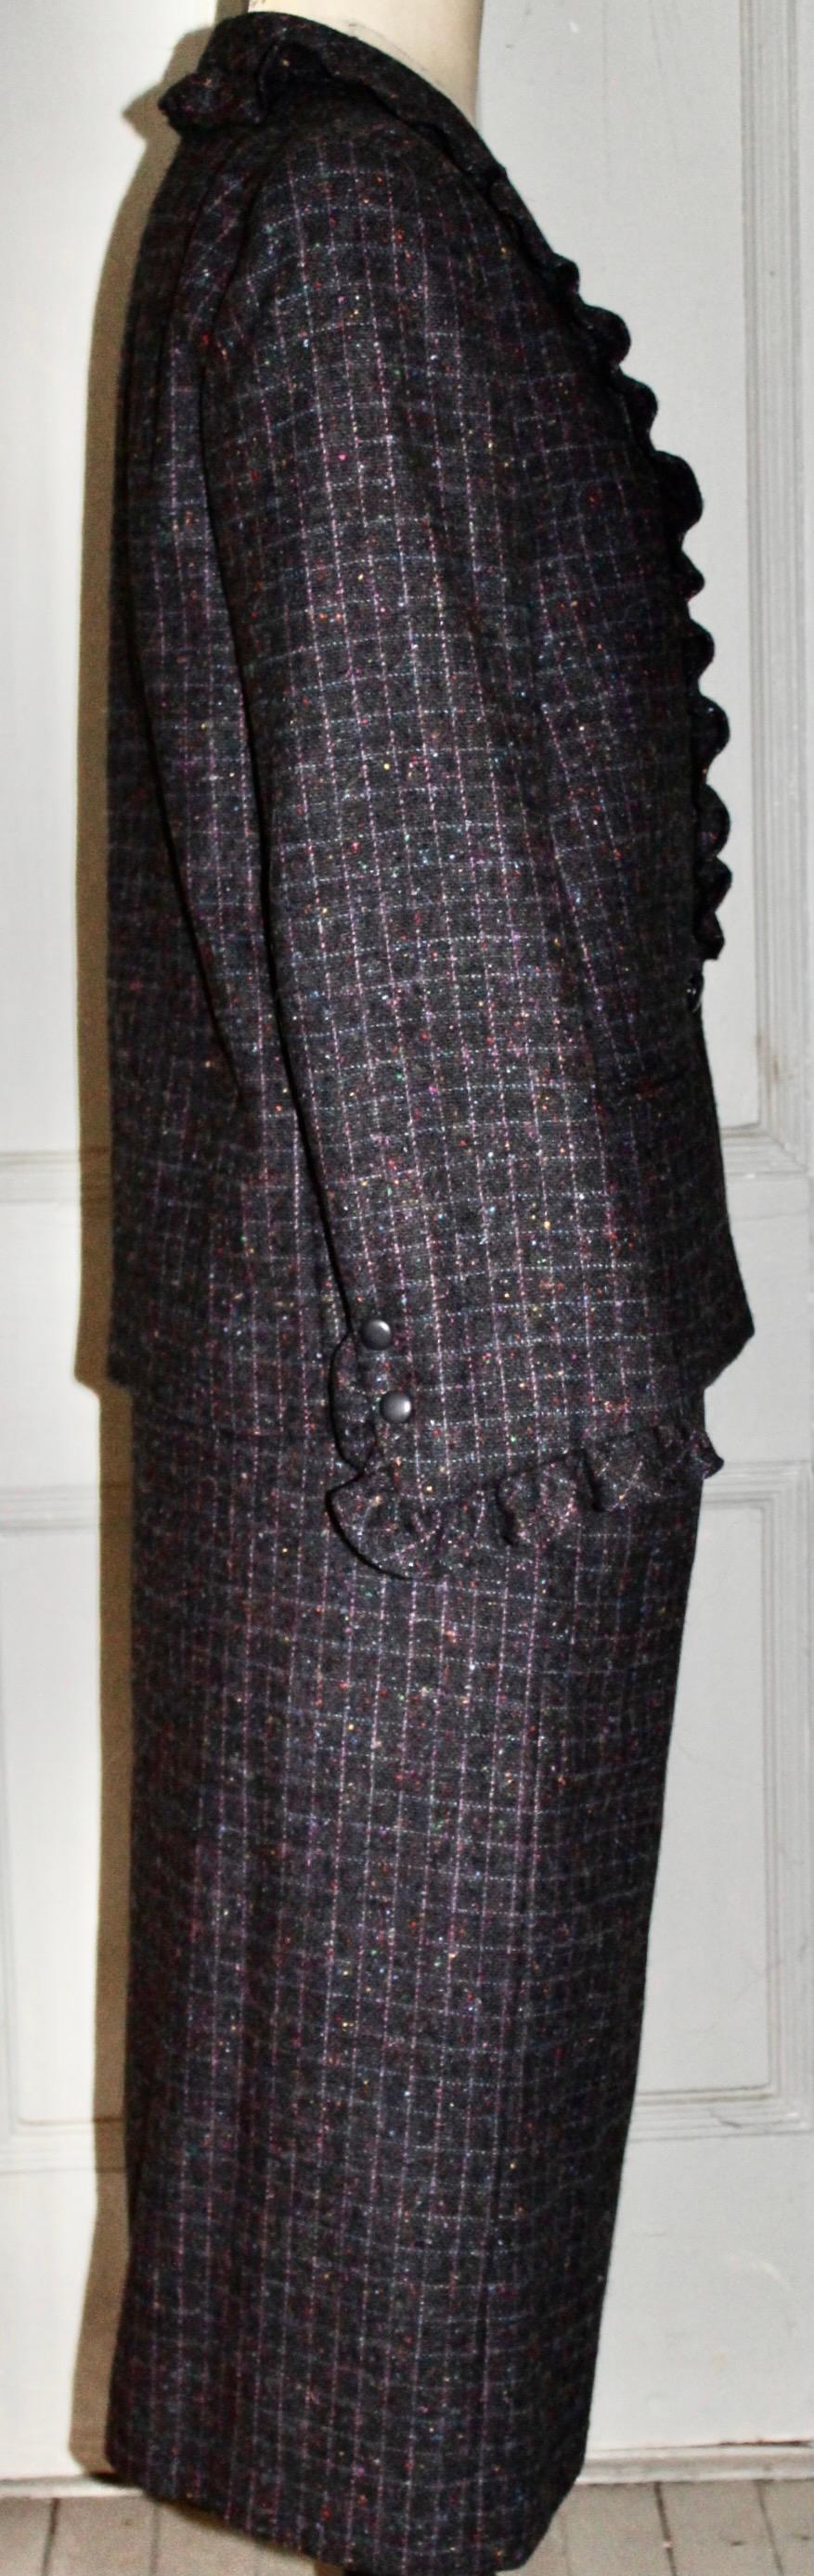 Nina Ricci Boutique Suit, Paris France For Sale 1